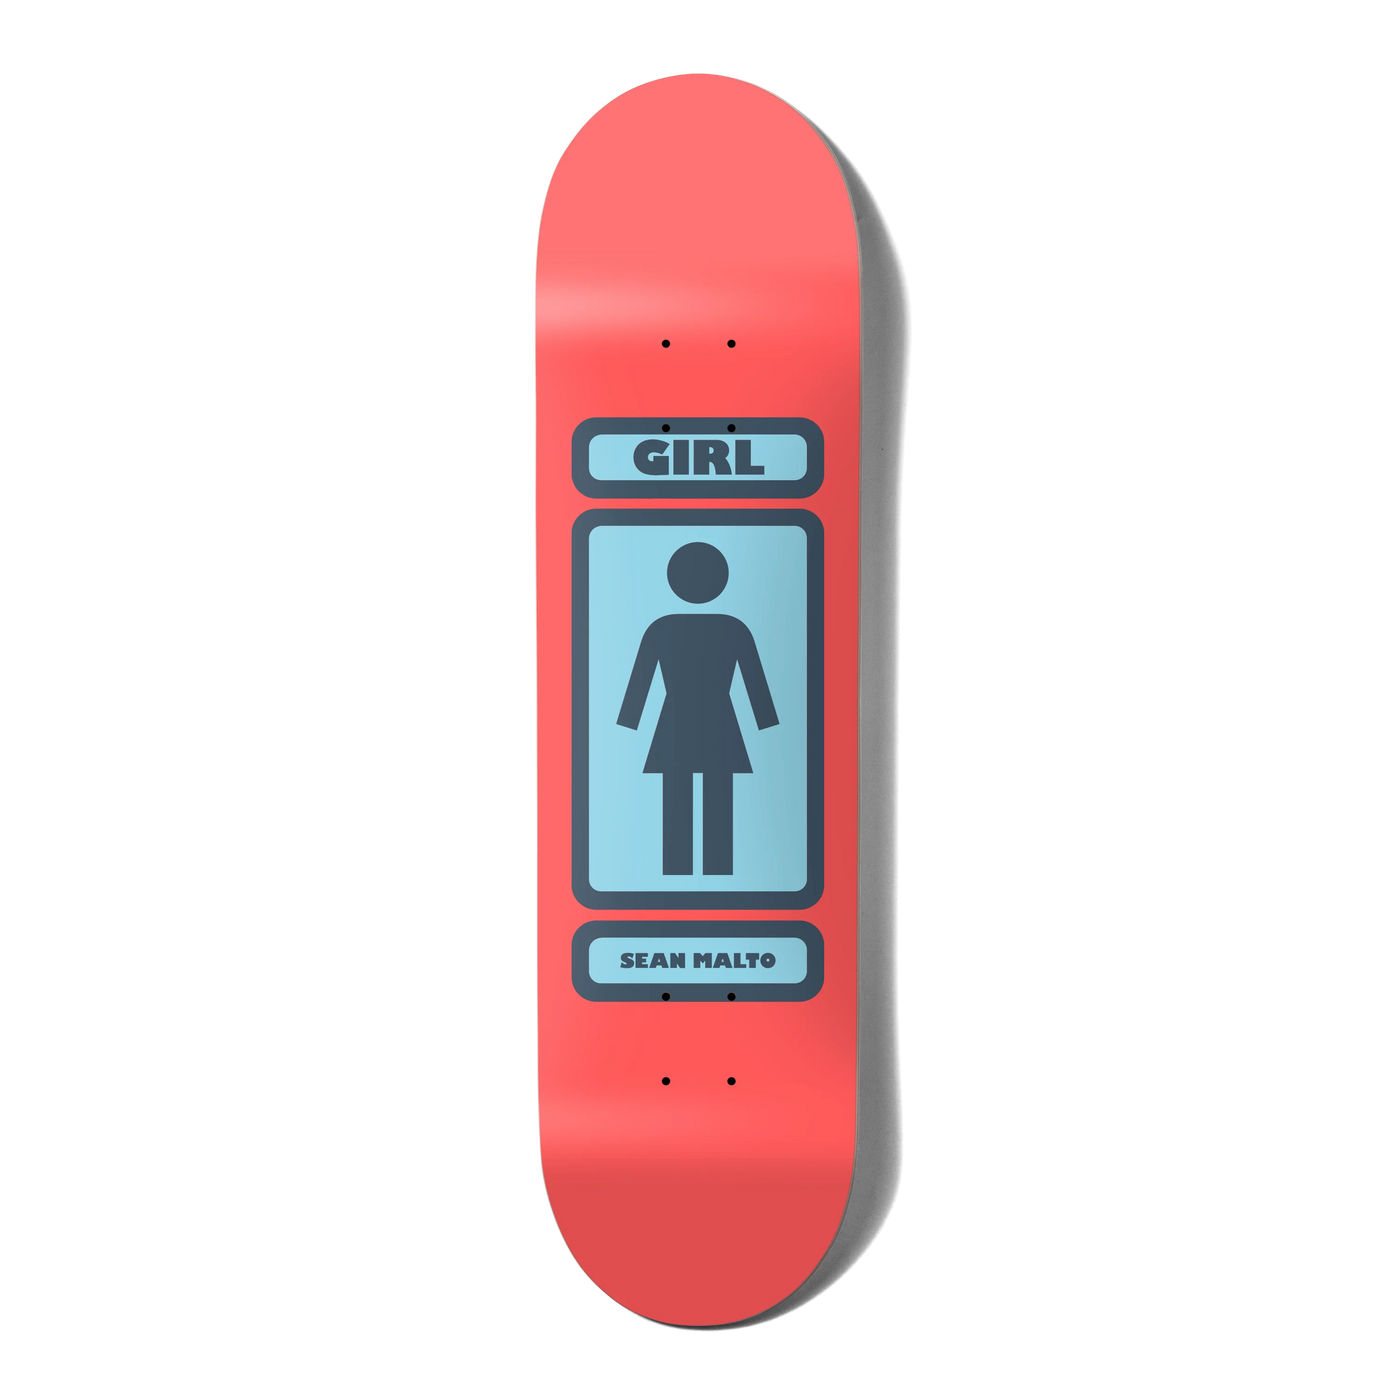 Girl Sean Malto 93 Til W45D1 Skateboard - 8.0"